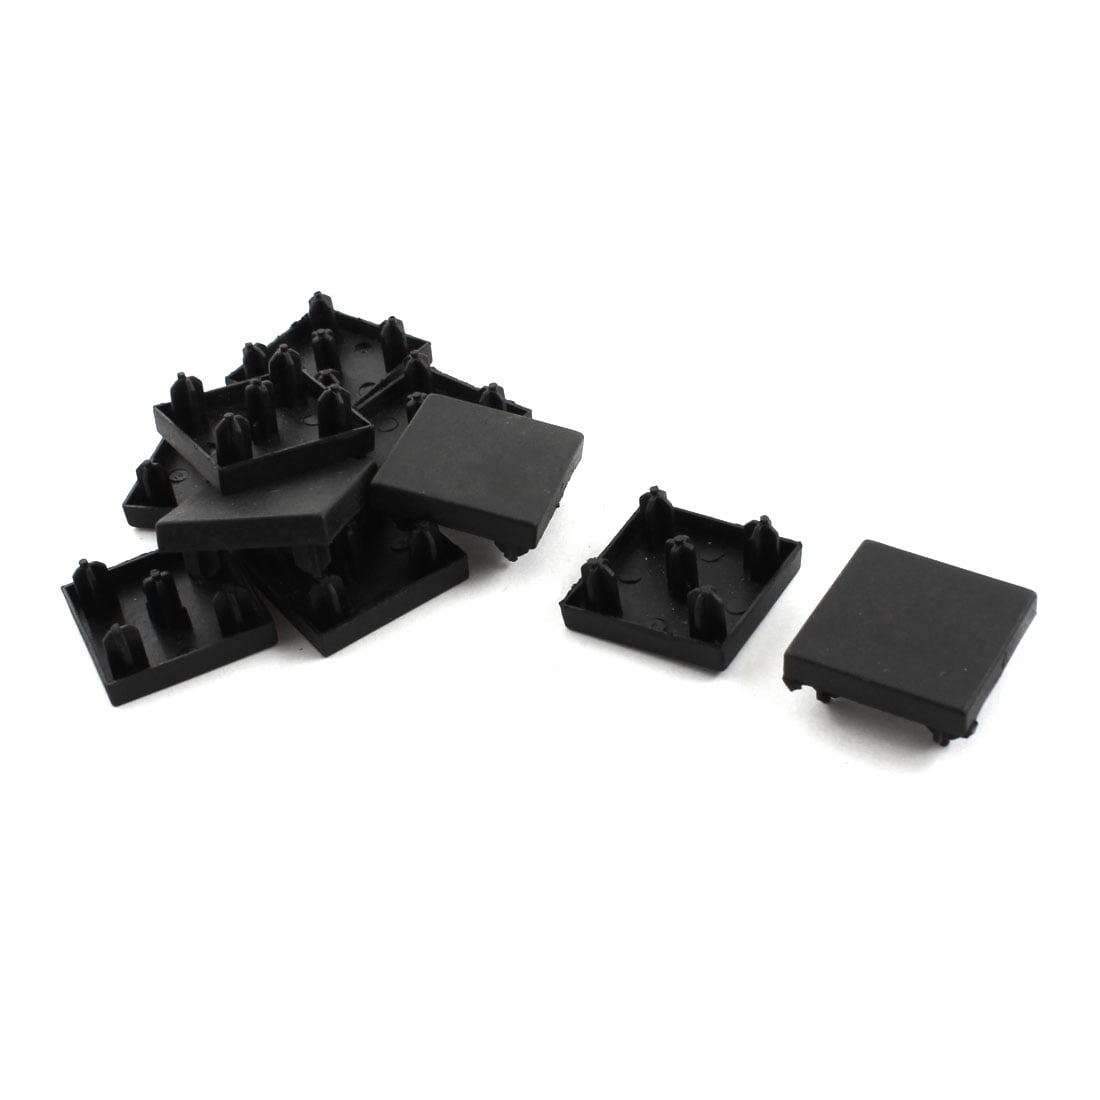 10 Pcs Black Extrusion End Cap for 28mm x 28mm T-Slot Aluminum Profile ...